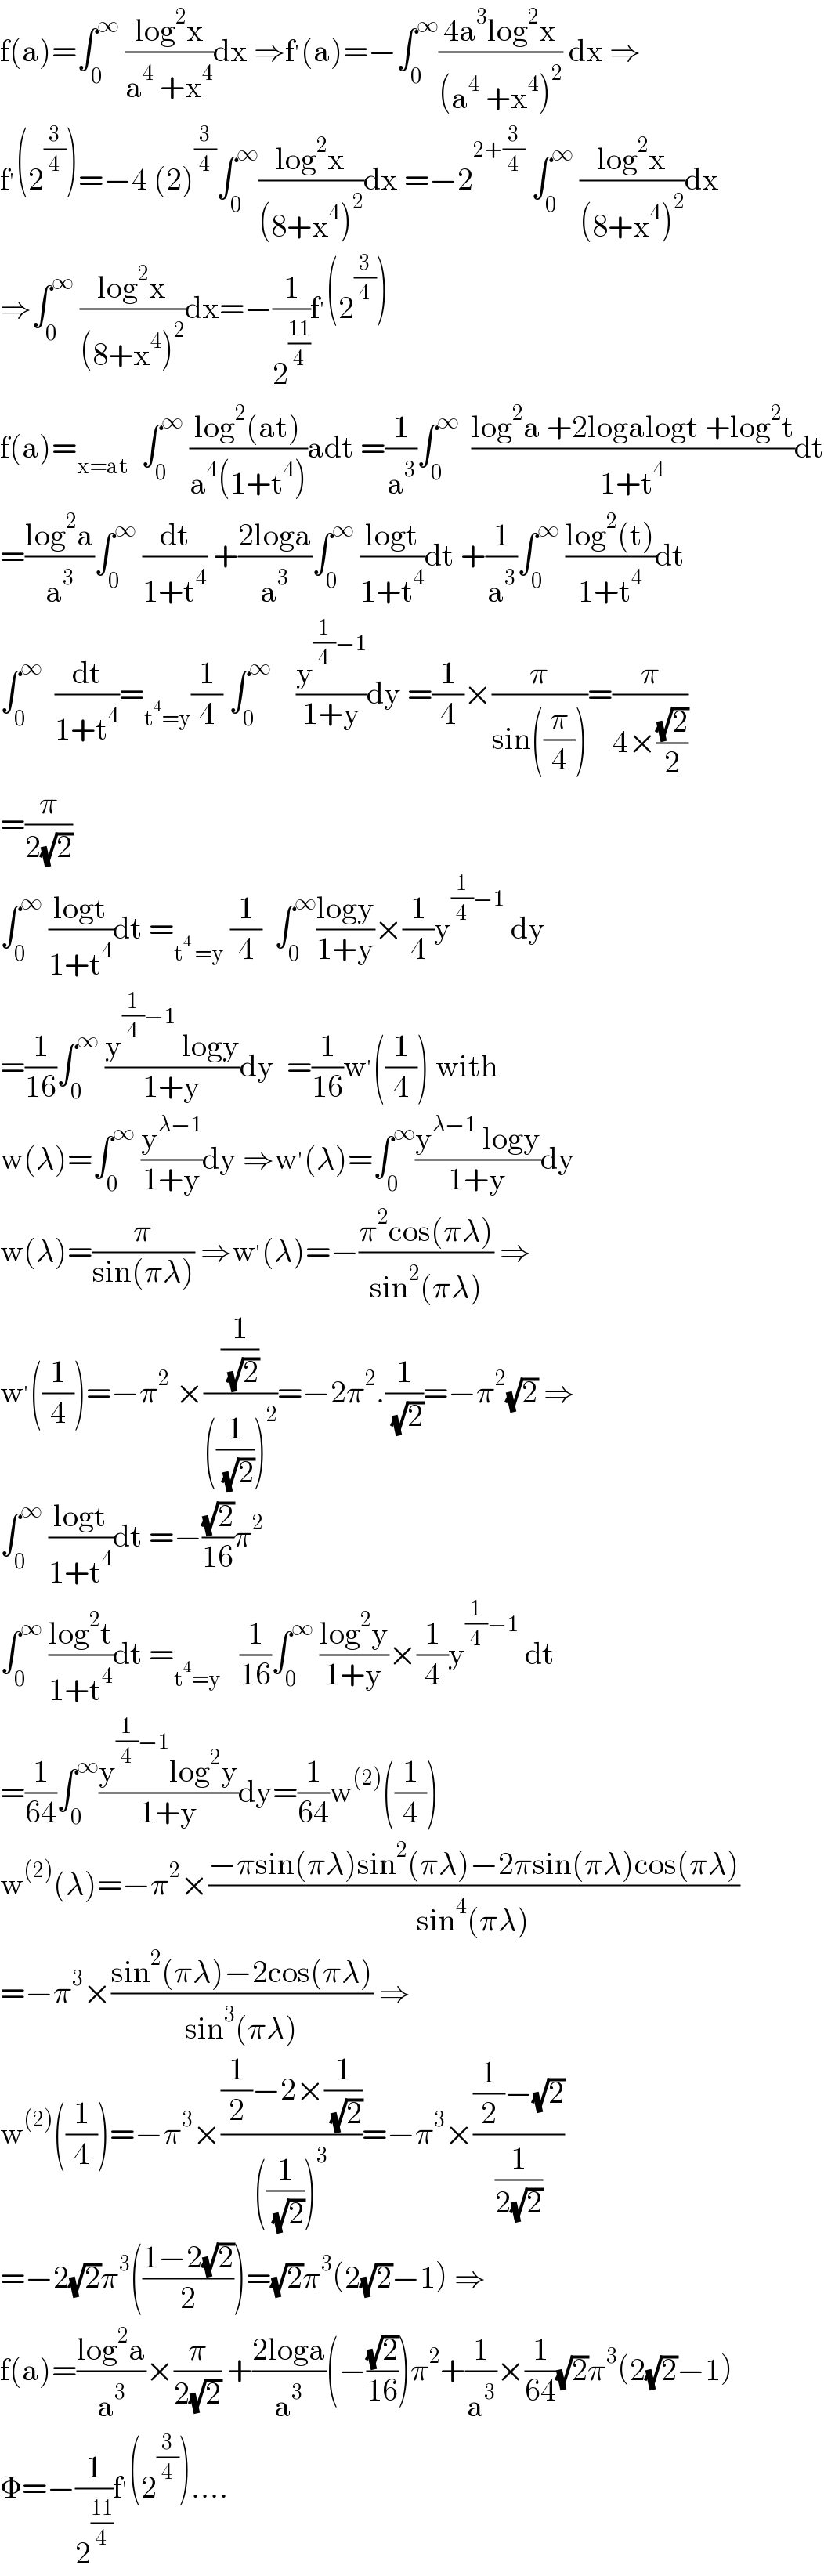 f(a)=∫_0 ^∞  ((log^2 x)/(a^4  +x^4 ))dx ⇒f^′ (a)=−∫_0 ^∞ ((4a^3 log^2 x)/((a^4  +x^4 )^2 )) dx ⇒  f^′ (2^(3/4) )=−4 (2)^(3/4) ∫_0 ^∞ ((log^2 x)/((8+x^4 )^2 ))dx =−2^(2+(3/4))  ∫_0 ^∞  ((log^2 x)/((8+x^4 )^2 ))dx  ⇒∫_0 ^∞  ((log^2 x)/((8+x^4 )^2 ))dx=−(1/2^((11)/4) )f^′ (2^(3/4) )  f(a)=_(x=at)   ∫_0 ^∞  ((log^2 (at))/(a^4 (1+t^4 )))adt =(1/a^3 )∫_0 ^∞   ((log^2 a +2logalogt +log^2 t)/(1+t^4 ))dt  =((log^2 a)/a^3 )∫_0 ^∞  (dt/(1+t^4 )) +((2loga)/a^3 )∫_0 ^∞  ((logt)/(1+t^4 ))dt +(1/a^3 )∫_0 ^∞  ((log^2 (t))/(1+t^4 ))dt  ∫_0 ^∞   (dt/(1+t^4 ))=_(t^4 =y) (1/4) ∫_0 ^∞     (y^((1/4)−1) /(1+y))dy =(1/4)×(π/(sin((π/4))))=(π/(4×((√2)/2)))  =(π/(2(√2)))  ∫_0 ^∞  ((logt)/(1+t^4 ))dt =_(t^4  =y)  (1/4)  ∫_0 ^∞ ((logy)/(1+y))×(1/4)y^((1/4)−1)  dy  =(1/(16))∫_0 ^∞  ((y^((1/4)−1)  logy)/(1+y))dy  =(1/(16))w^′ ((1/4)) with  w(λ)=∫_0 ^∞  (y^(λ−1) /(1+y))dy ⇒w^′ (λ)=∫_0 ^∞ ((y^(λ−1)  logy)/(1+y))dy  w(λ)=(π/(sin(πλ))) ⇒w^′ (λ)=−((π^2 cos(πλ))/(sin^2 (πλ))) ⇒  w^′ ((1/4))=−π^2  ×((1/( (√2)))/(((1/( (√2))))^2 ))=−2π^2 .(1/( (√2)))=−π^2 (√2) ⇒  ∫_0 ^∞  ((logt)/(1+t^4 ))dt =−((√2)/(16))π^2   ∫_0 ^∞  ((log^2 t)/(1+t^4 ))dt =_(t^4 =y)    (1/(16))∫_0 ^∞  ((log^2 y)/(1+y))×(1/4)y^((1/4)−1)  dt  =(1/(64))∫_0 ^∞ ((y^((1/4)−1) log^2 y)/(1+y))dy=(1/(64))w^((2)) ((1/4))  w^((2)) (λ)=−π^2 ×((−πsin(πλ)sin^2 (πλ)−2πsin(πλ)cos(πλ))/(sin^4 (πλ)))  =−π^3 ×((sin^2 (πλ)−2cos(πλ))/(sin^3 (πλ))) ⇒  w^((2)) ((1/4))=−π^3 ×(((1/2)−2×(1/( (√2))))/(((1/( (√2))))^3 ))=−π^3 ×(((1/2)−(√2))/(1/(2(√2))))  =−2(√2)π^3 (((1−2(√2))/2))=(√2)π^3 (2(√2)−1) ⇒  f(a)=((log^2 a)/a^3 )×(π/(2(√2))) +((2loga)/a^3 )(−((√2)/(16)))π^2 +(1/a^3 )×(1/(64))(√2)π^3 (2(√2)−1)  Φ=−(1/2^((11)/4) )f^′ (2^(3/4) )....  